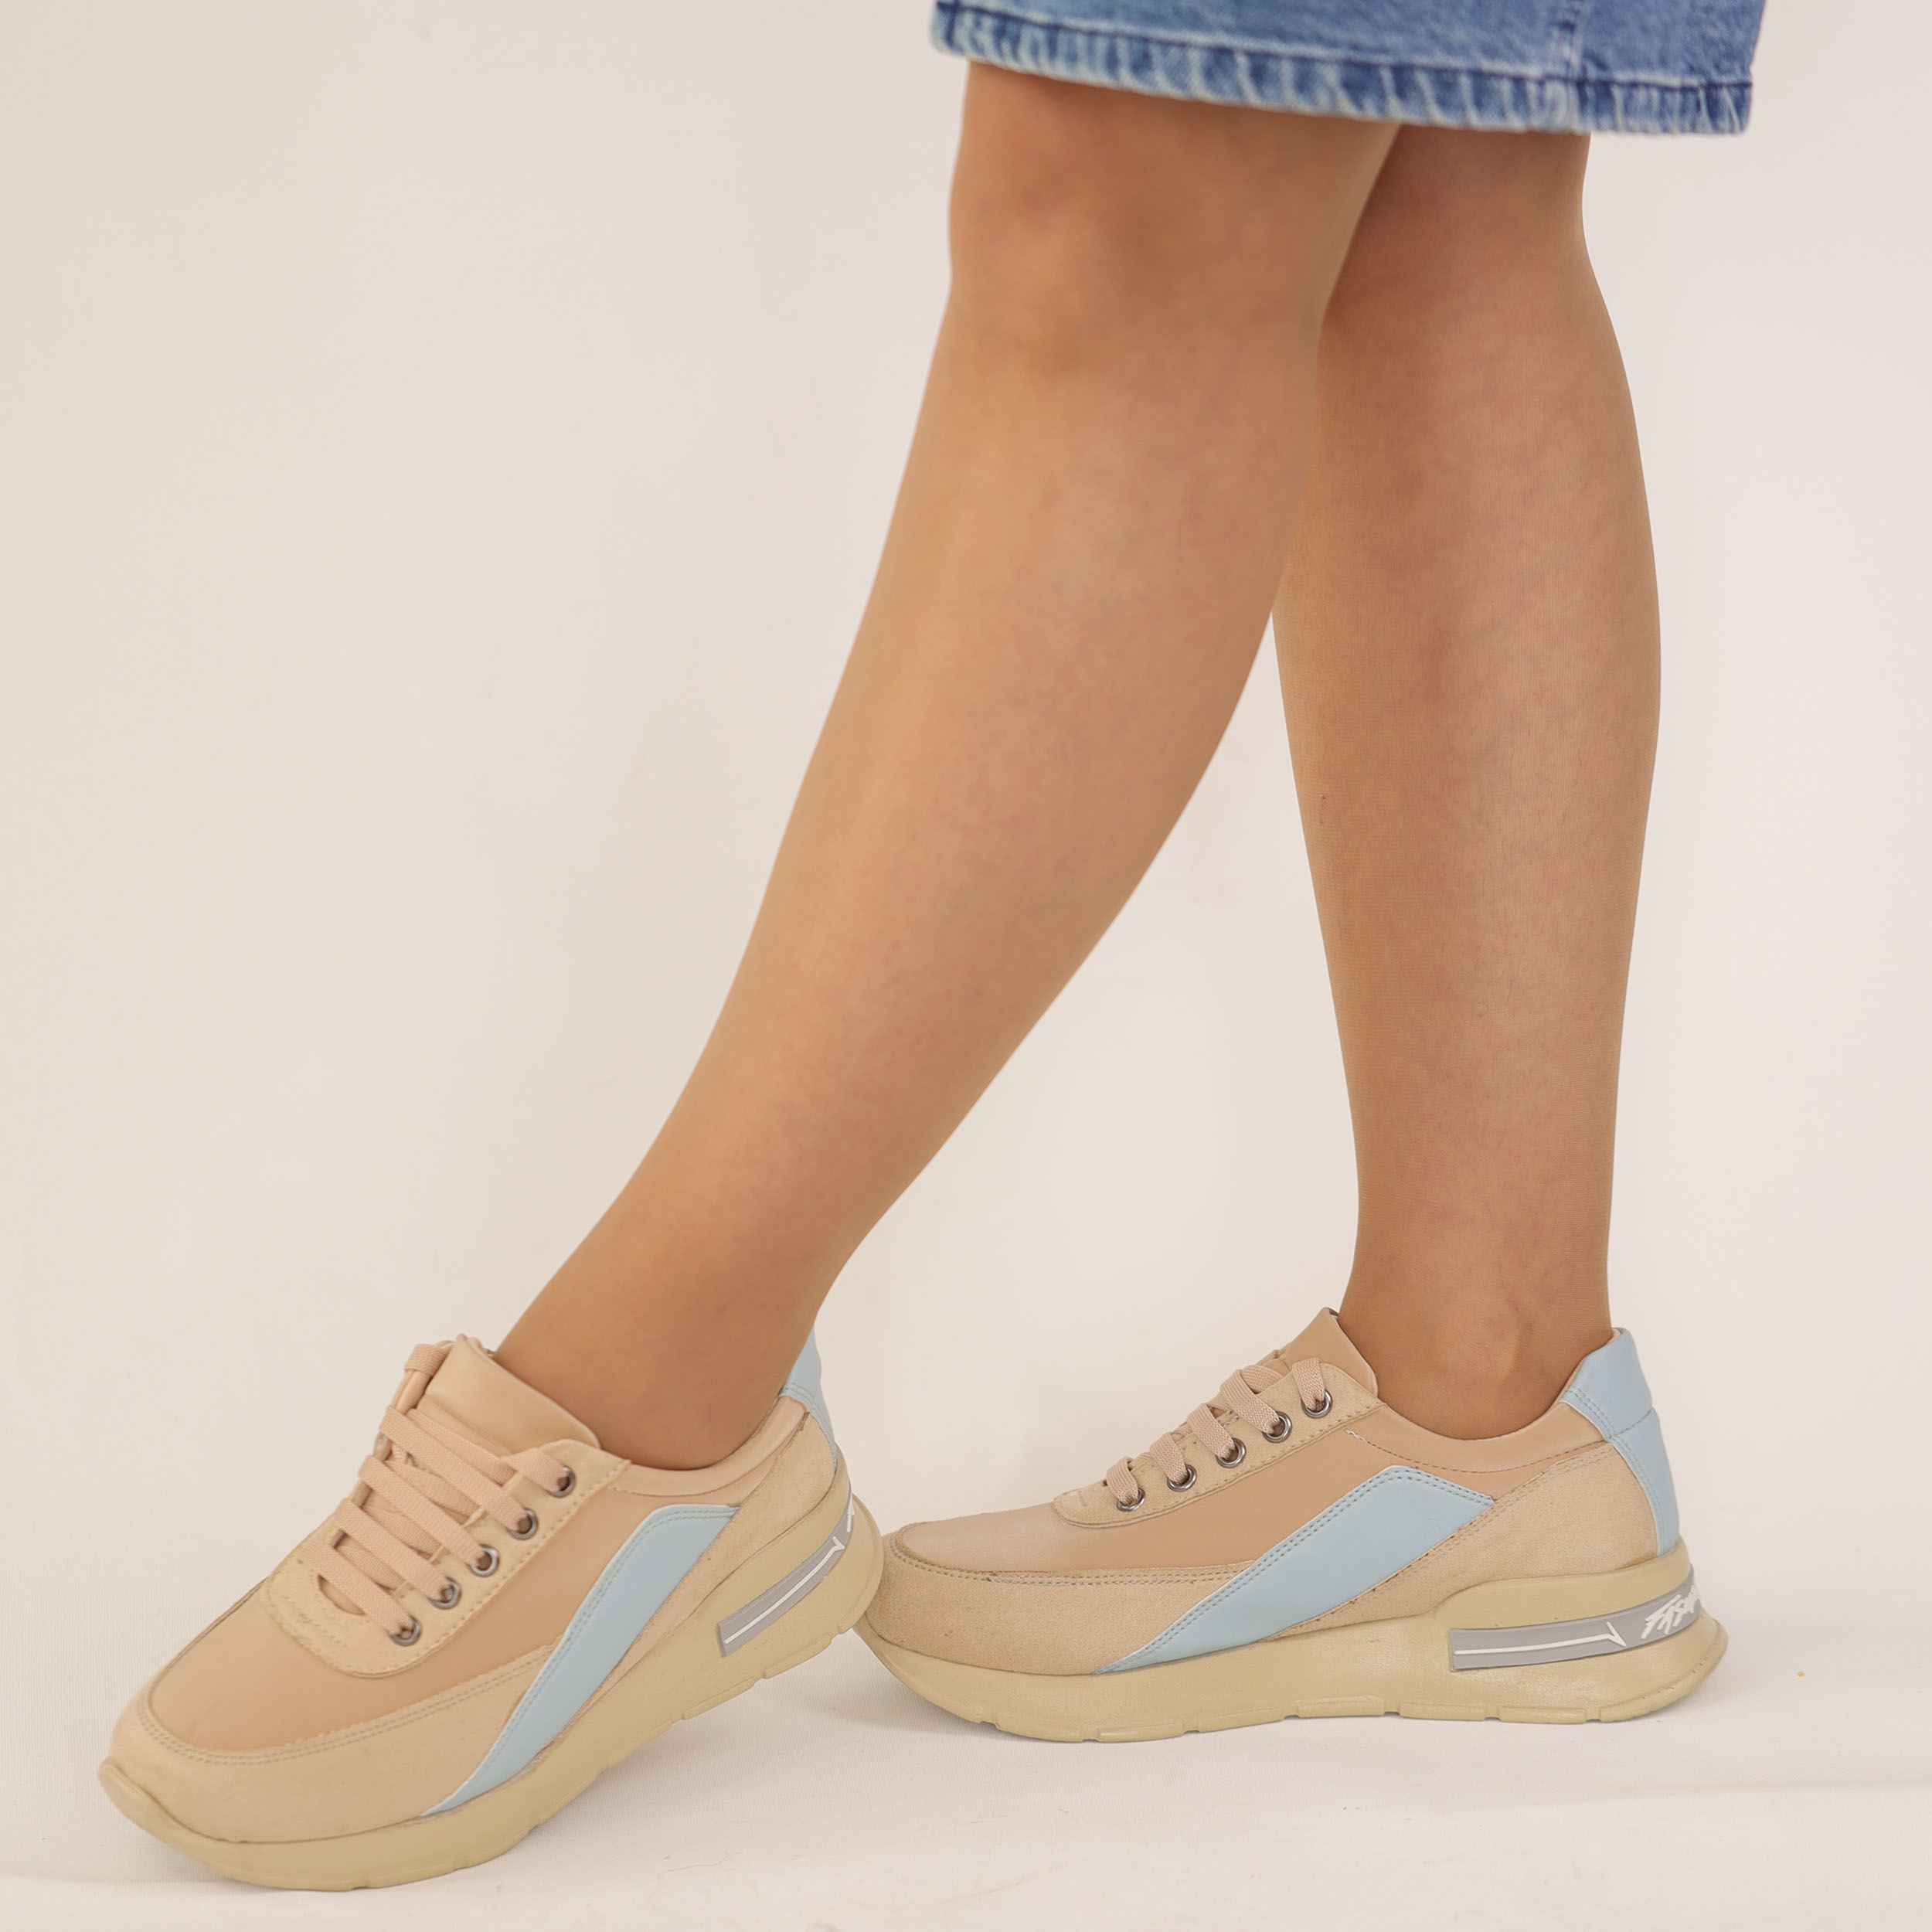 Kadın Kalın Tabanlı Bağcıklı Bej Sneakers Günlük Spor Rahat Ayakkabı, Renk: Bej, Beden: 36